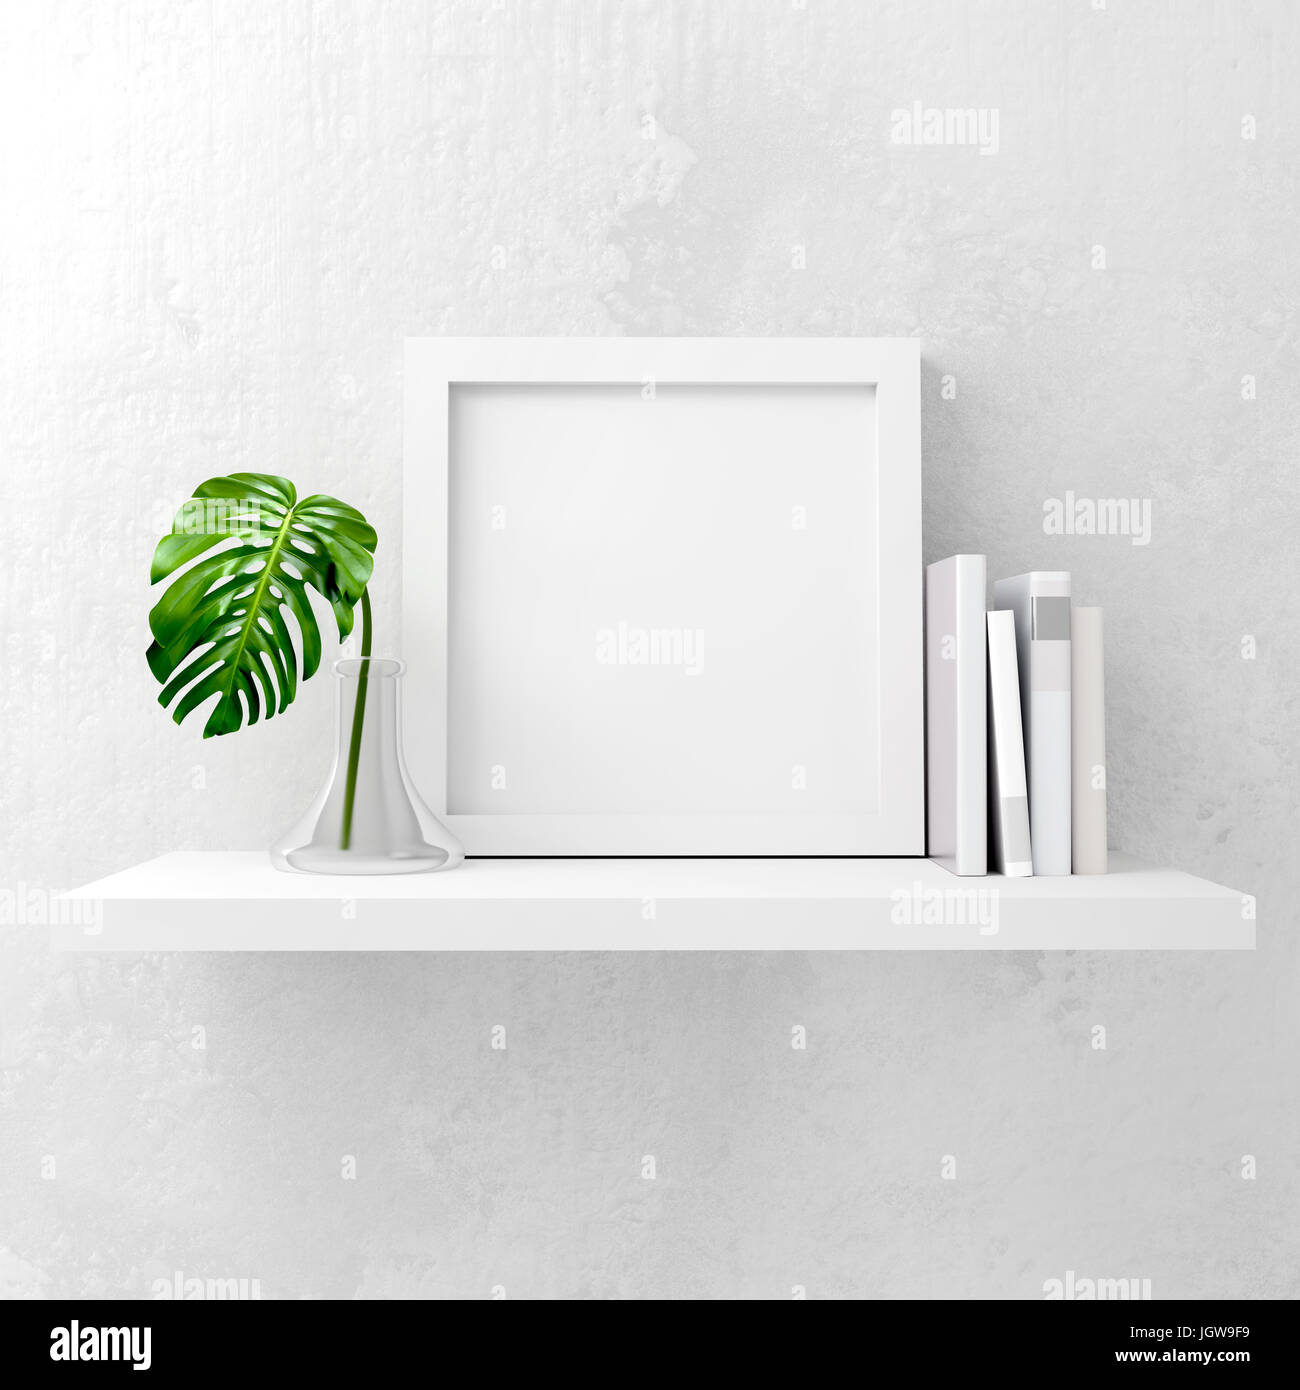 Nettoyer et maquette minimale avec cadre photo books et vert feuille décor sur un plateau blanc. Illustration 3D rendu. Banque D'Images